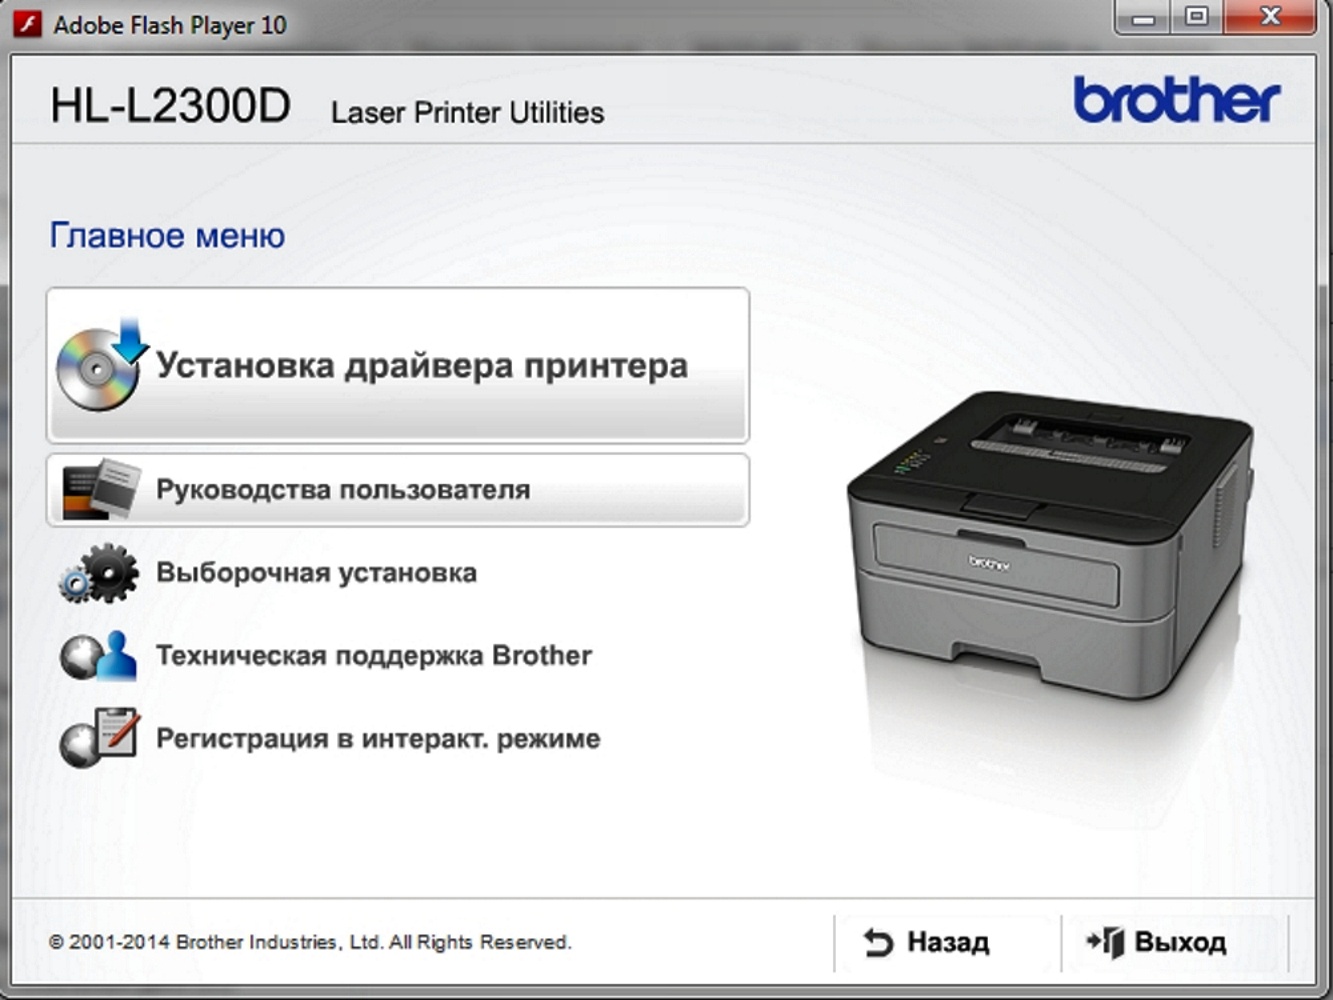 Почему принтер brother. Принтер с печатью бротхер. Brother DCP l2300. Лазер принтера Бразер 1215. Драйвера на принтер brother 2300.